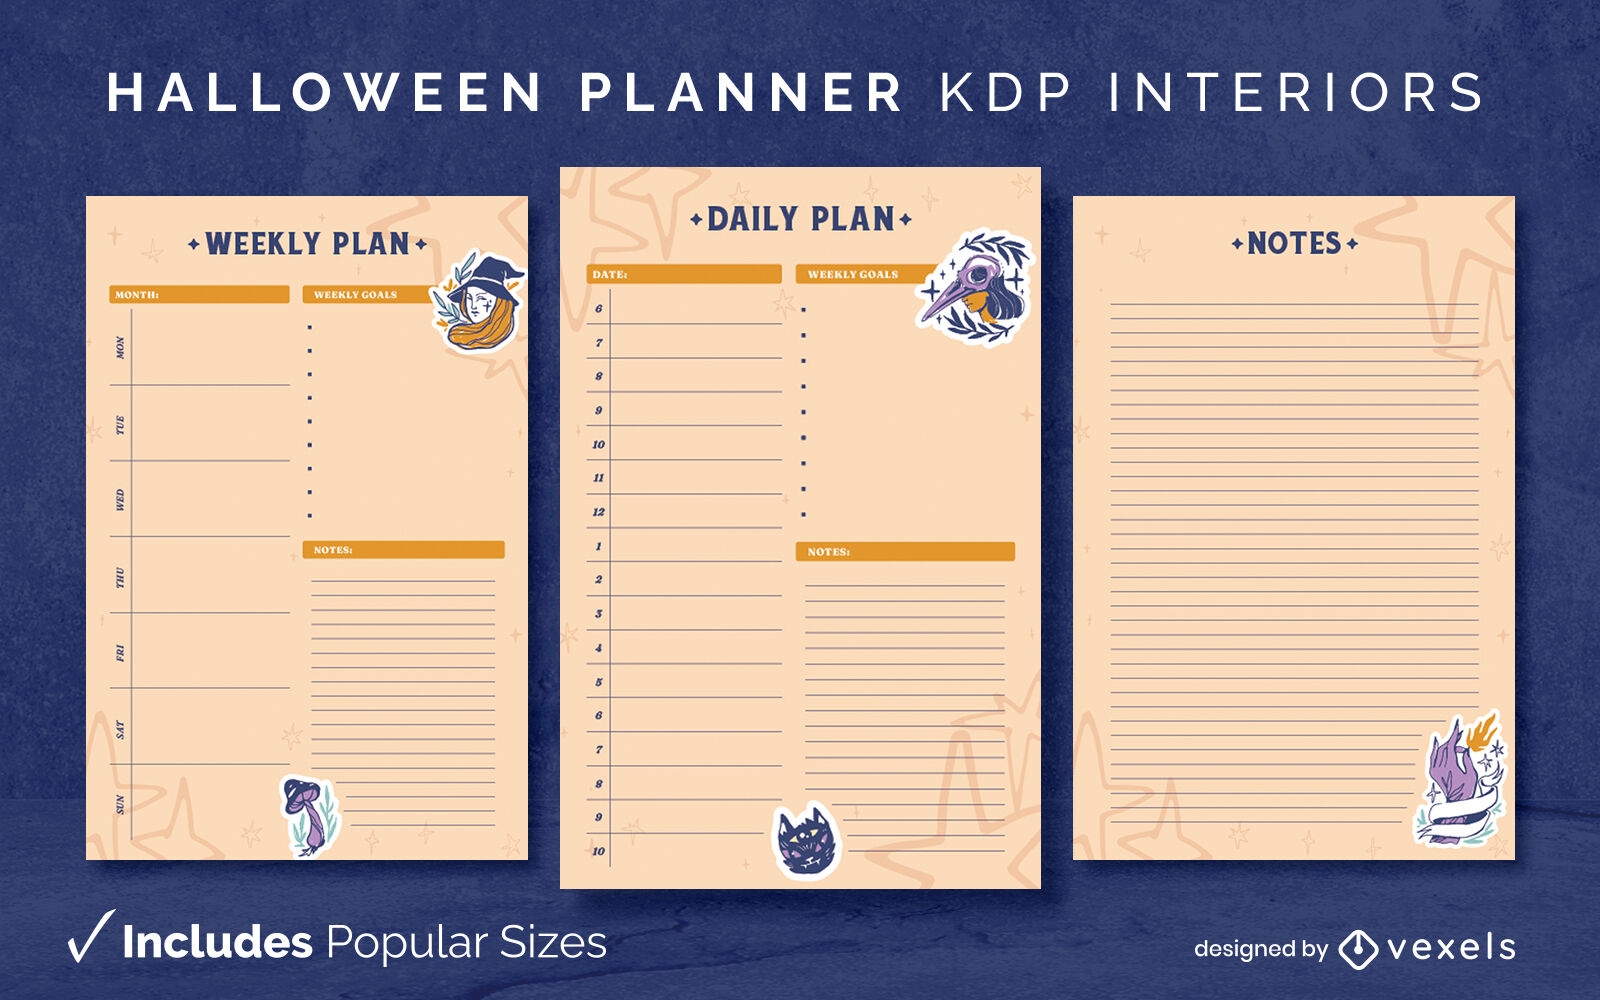 Plantilla de diario del planificador de brujas de Halloween Dise?o de interiores KDP